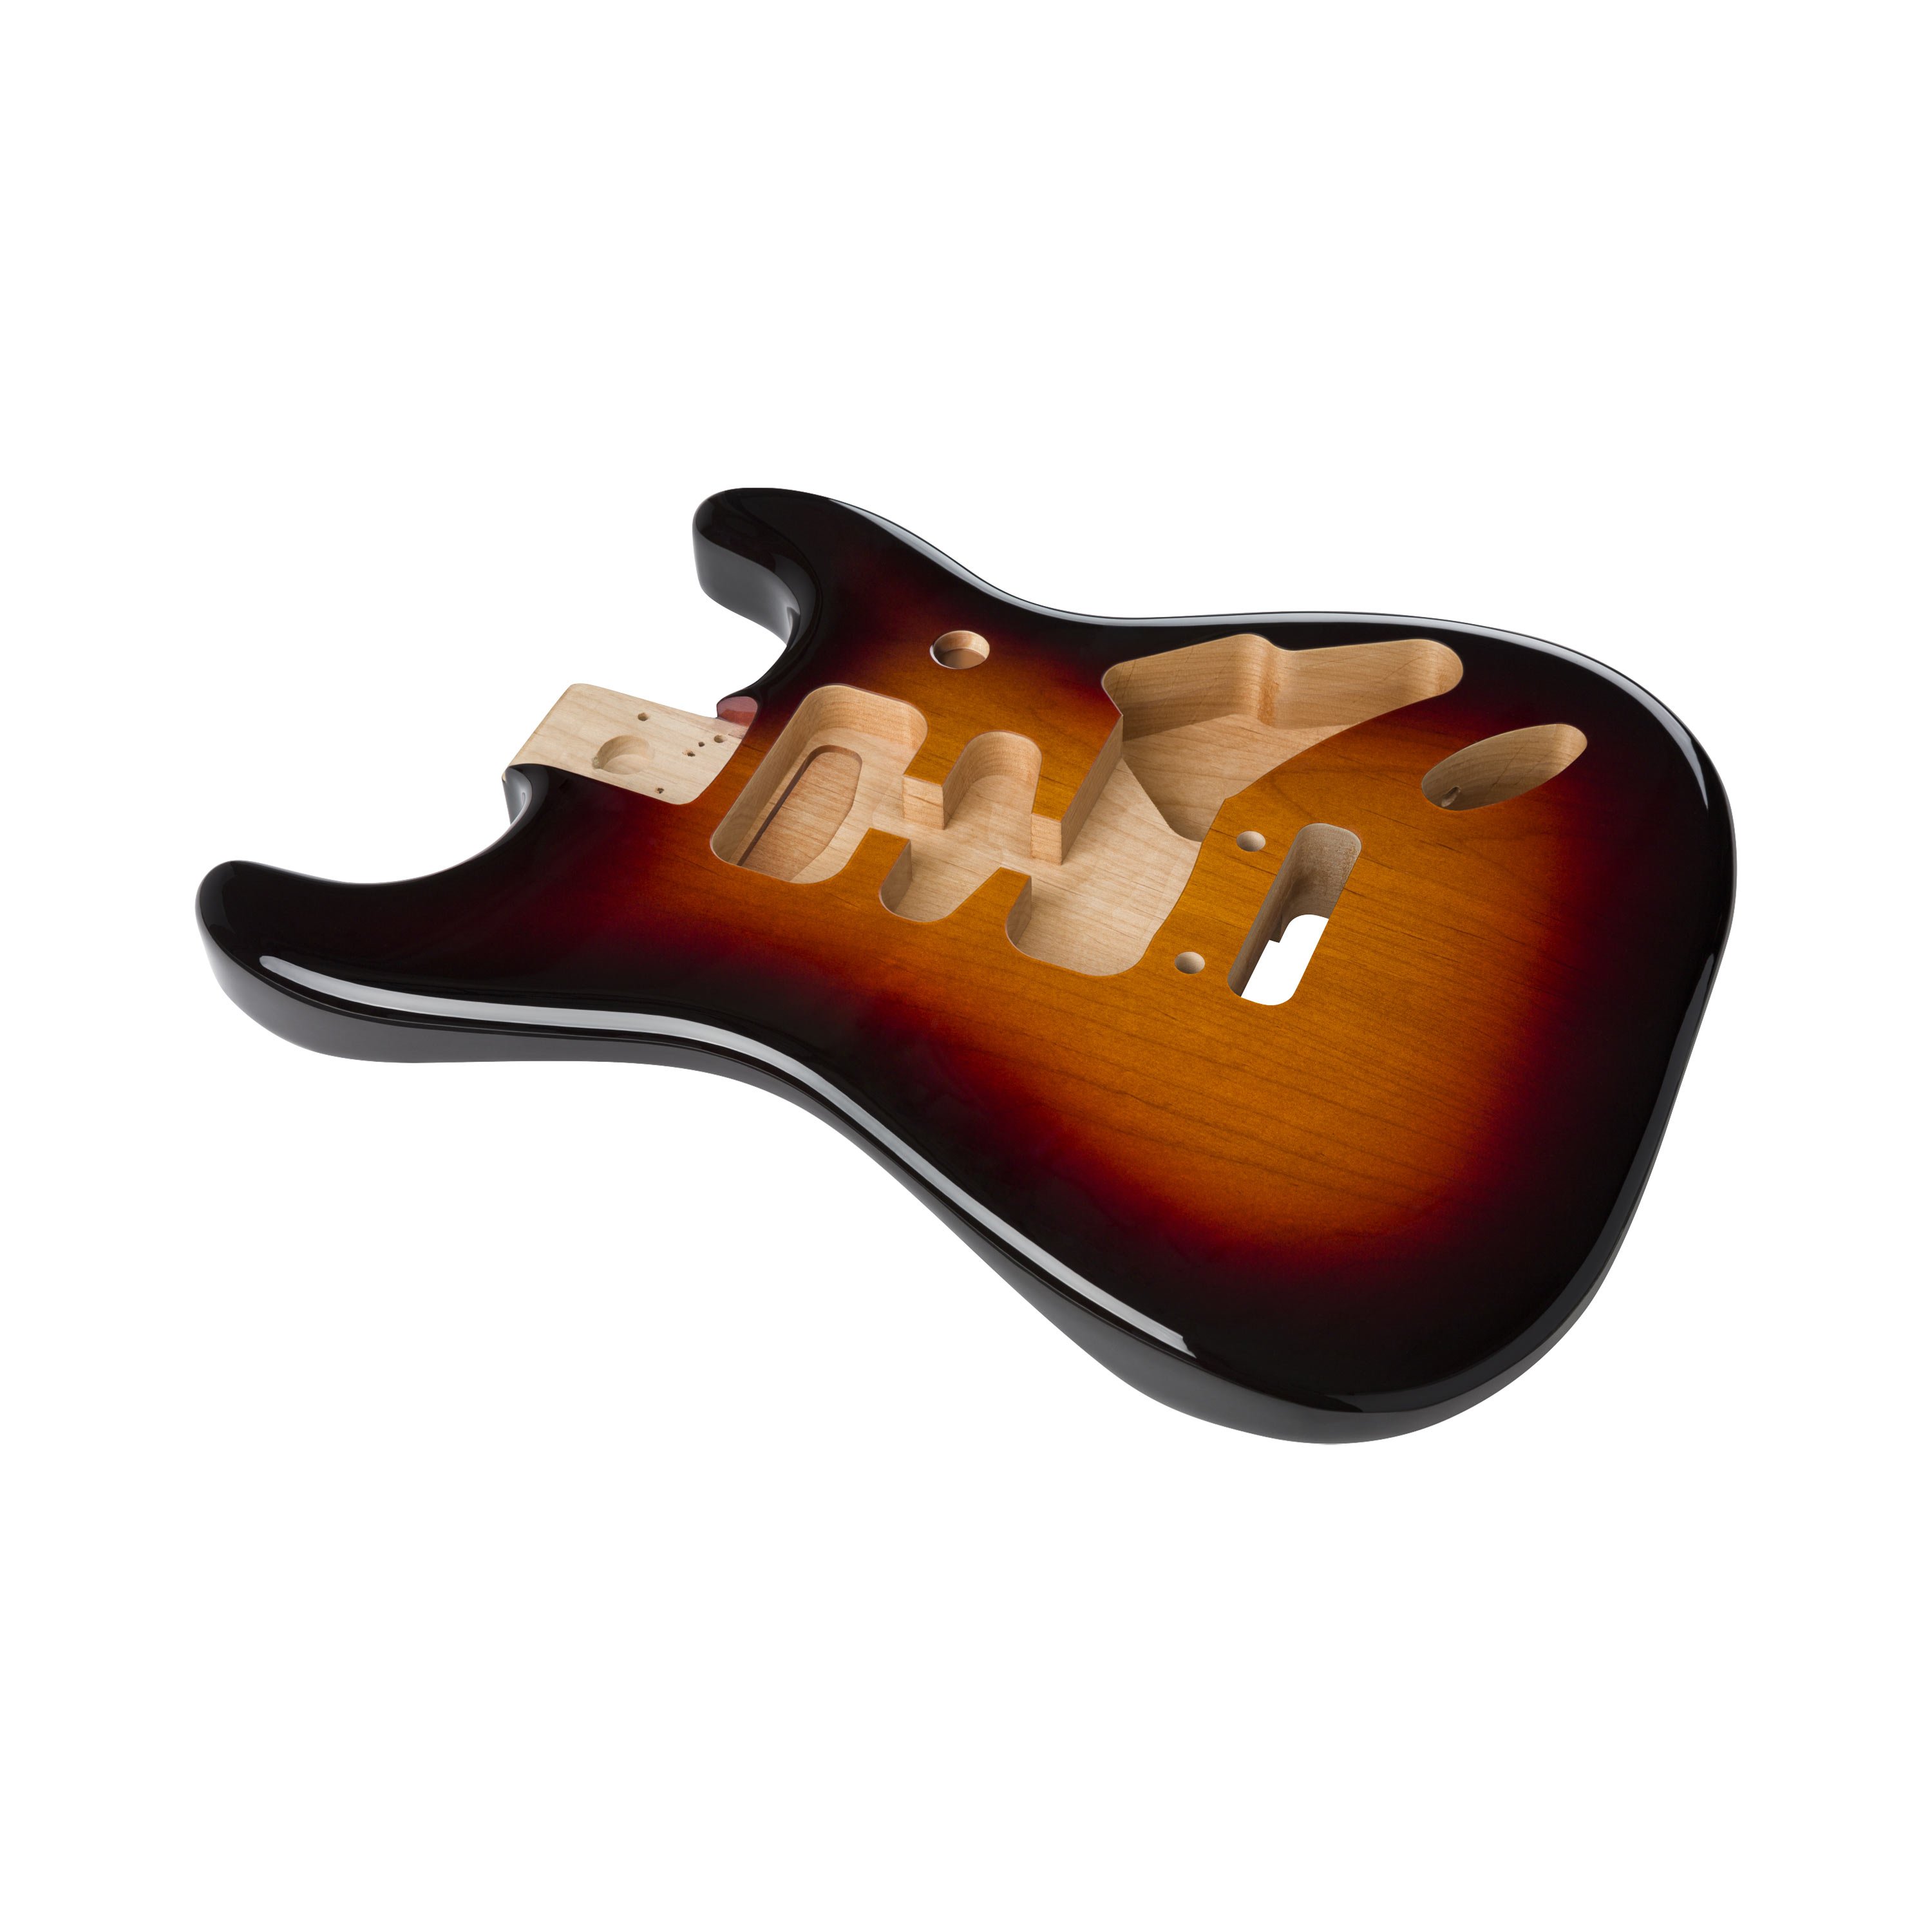 Fender Deluxe Stratocaster Body, 3-Color Sunburst